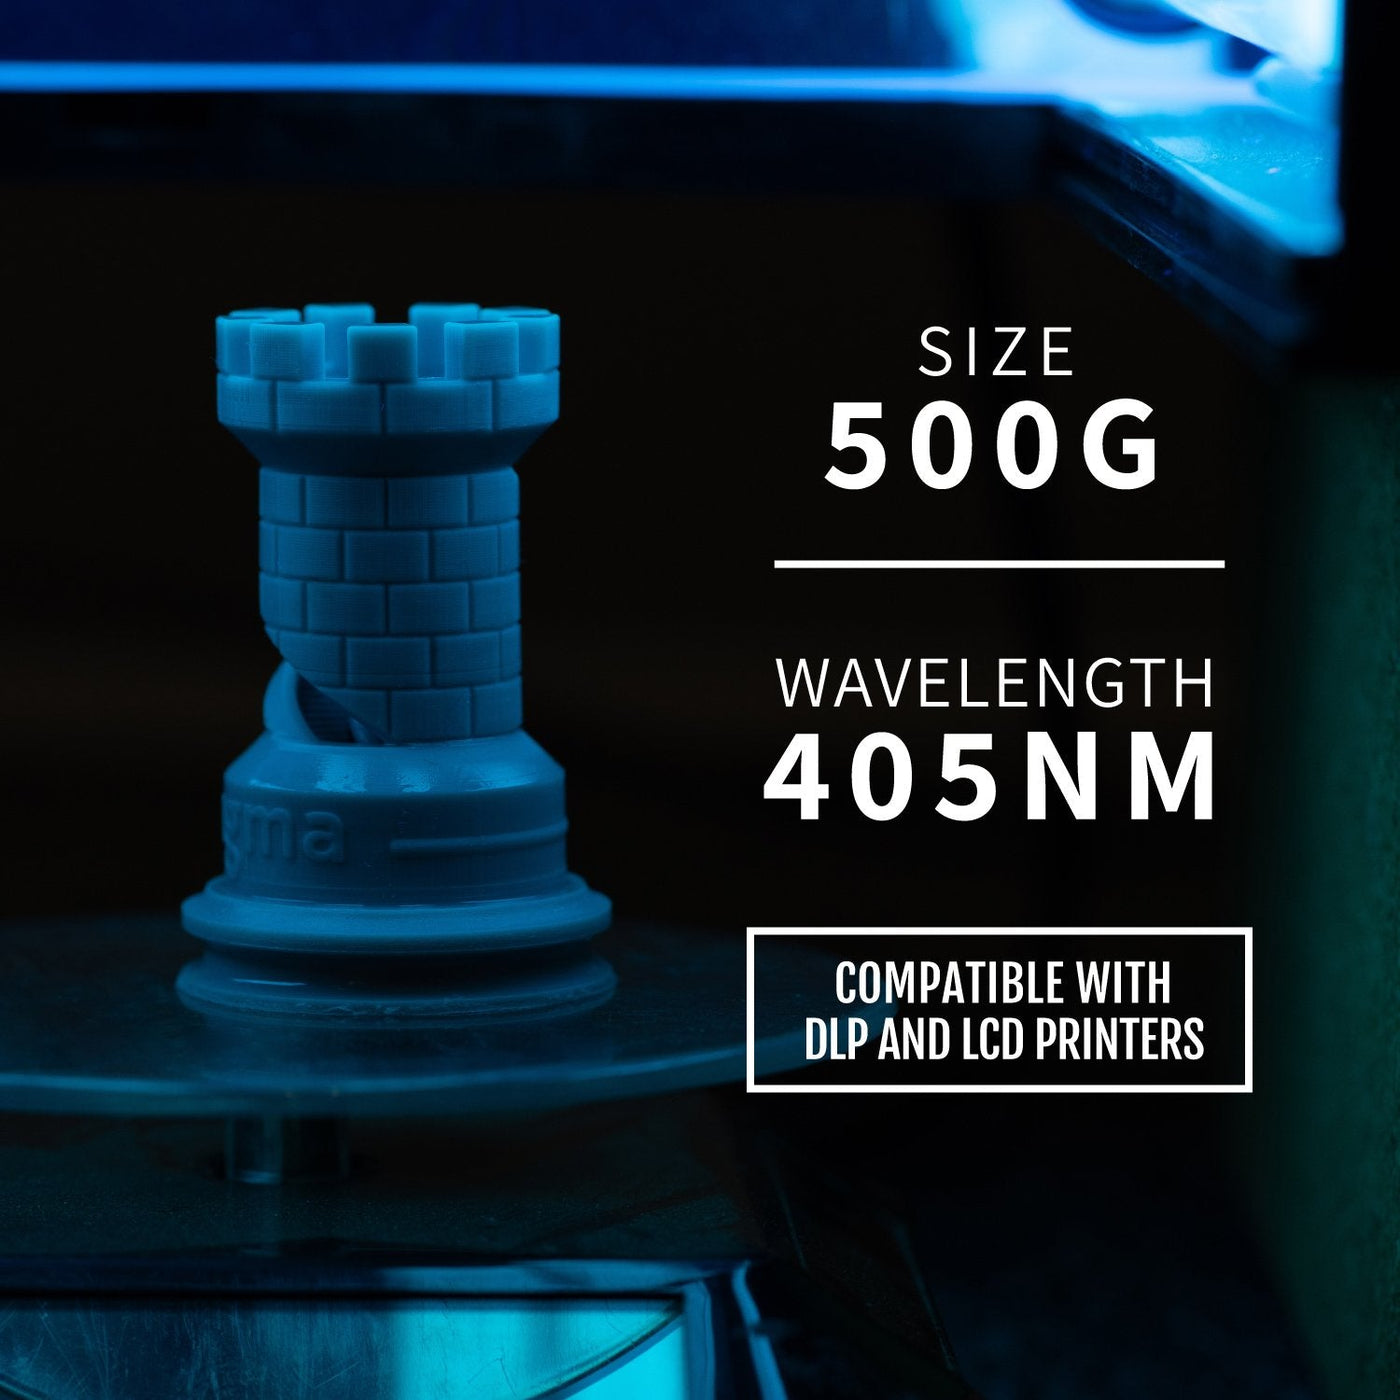 Black 3D Printer Resin - 405nm, 500ml Bottle